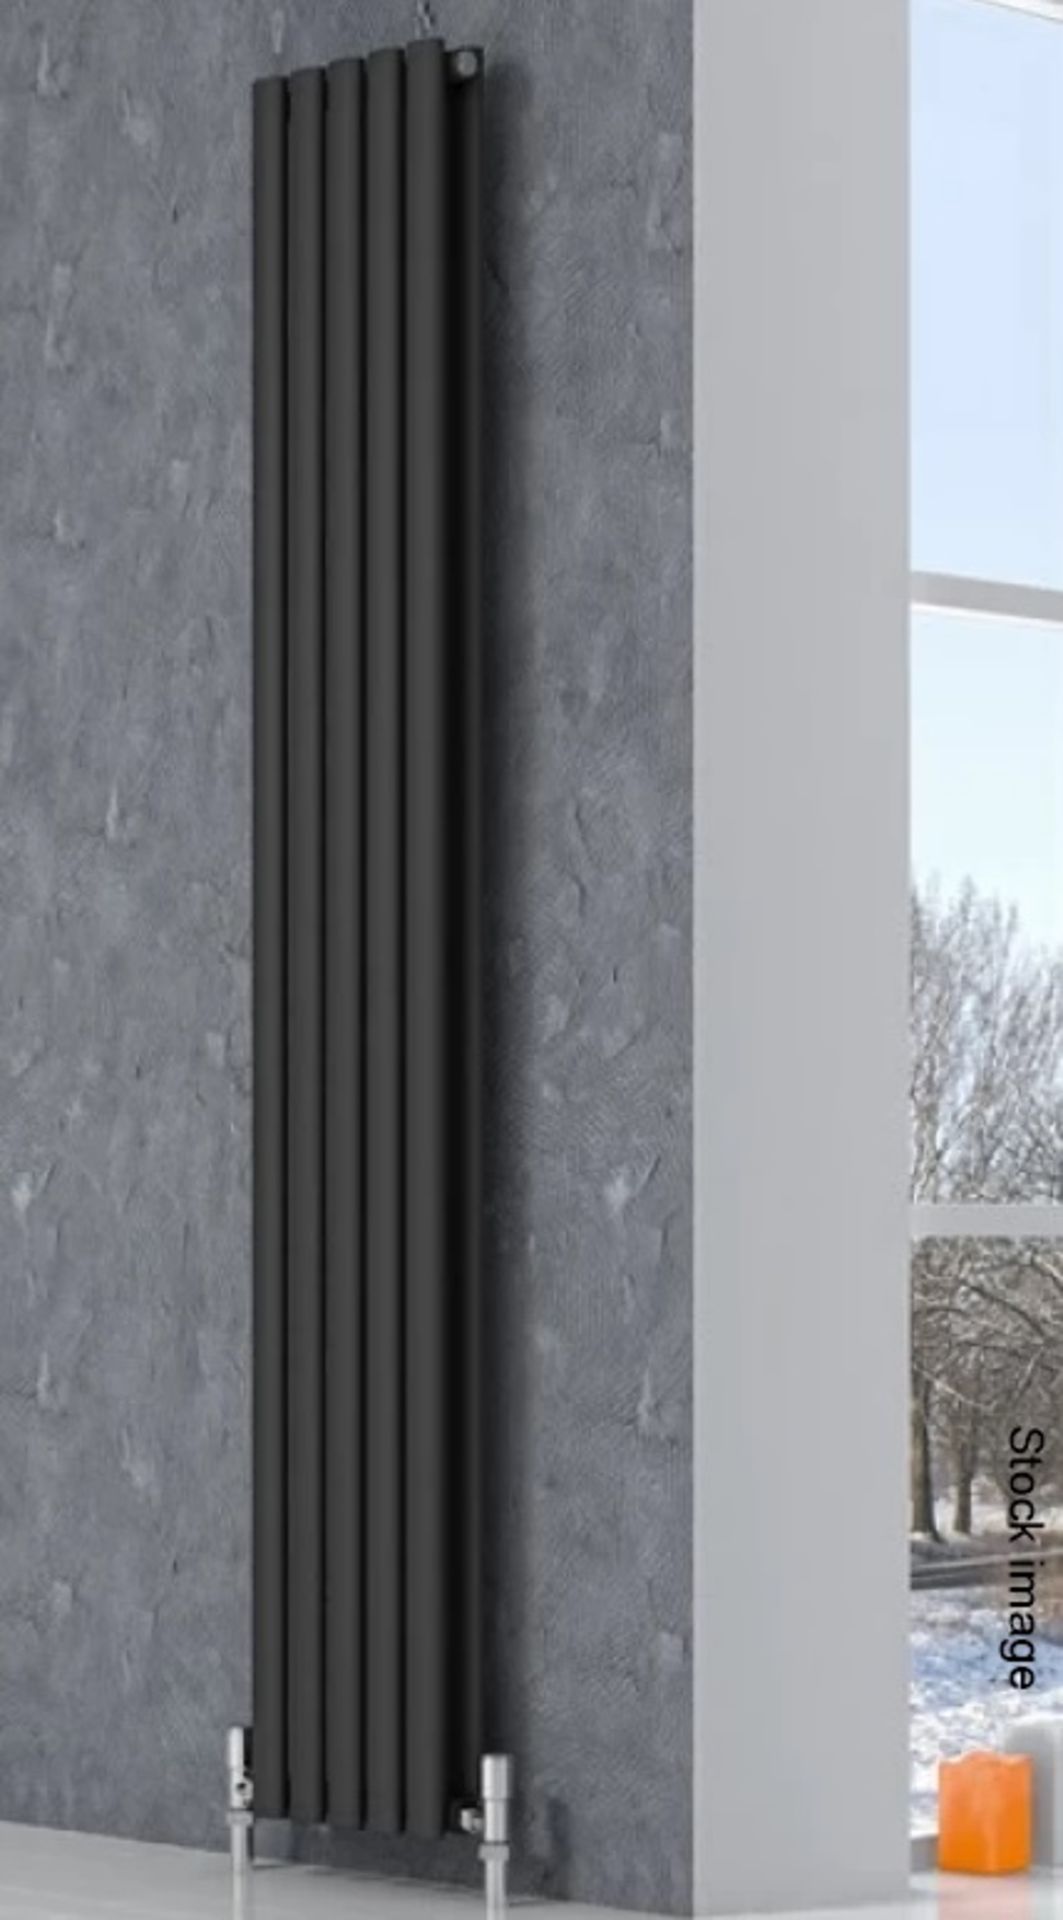 1 x REINA 'Neva' Vertical Double Column Radiator 1500mm x 472mm - In Window Grey - RRP £472.00